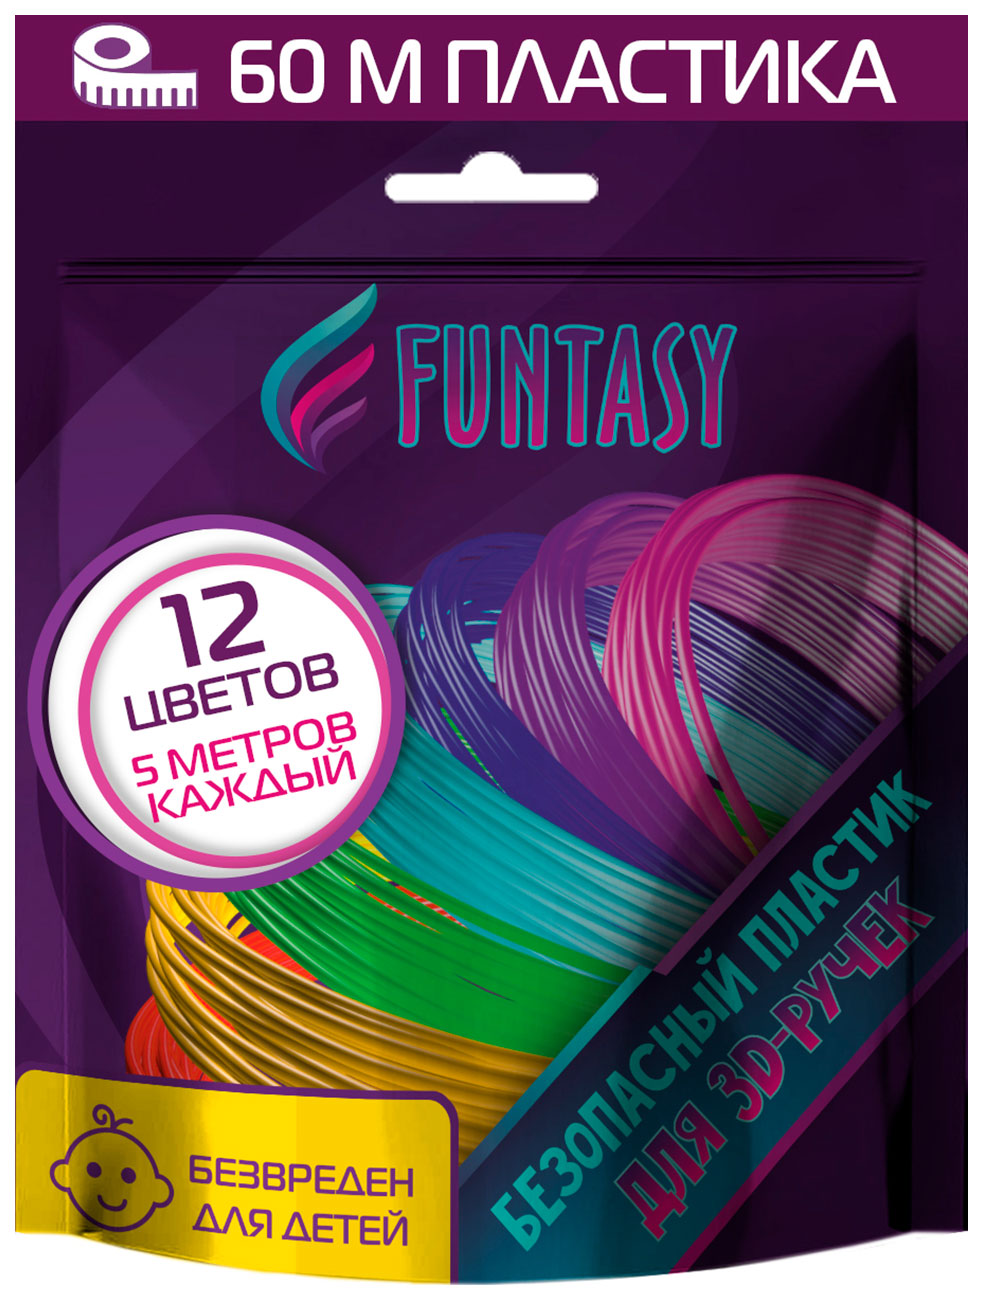 Набор PLA-пластика для 3д ручек Funtasy 12 цветов по 5 метров наборы для творчества funtasy набор pla пластика для 3d ручек 12 цветов по 10 м